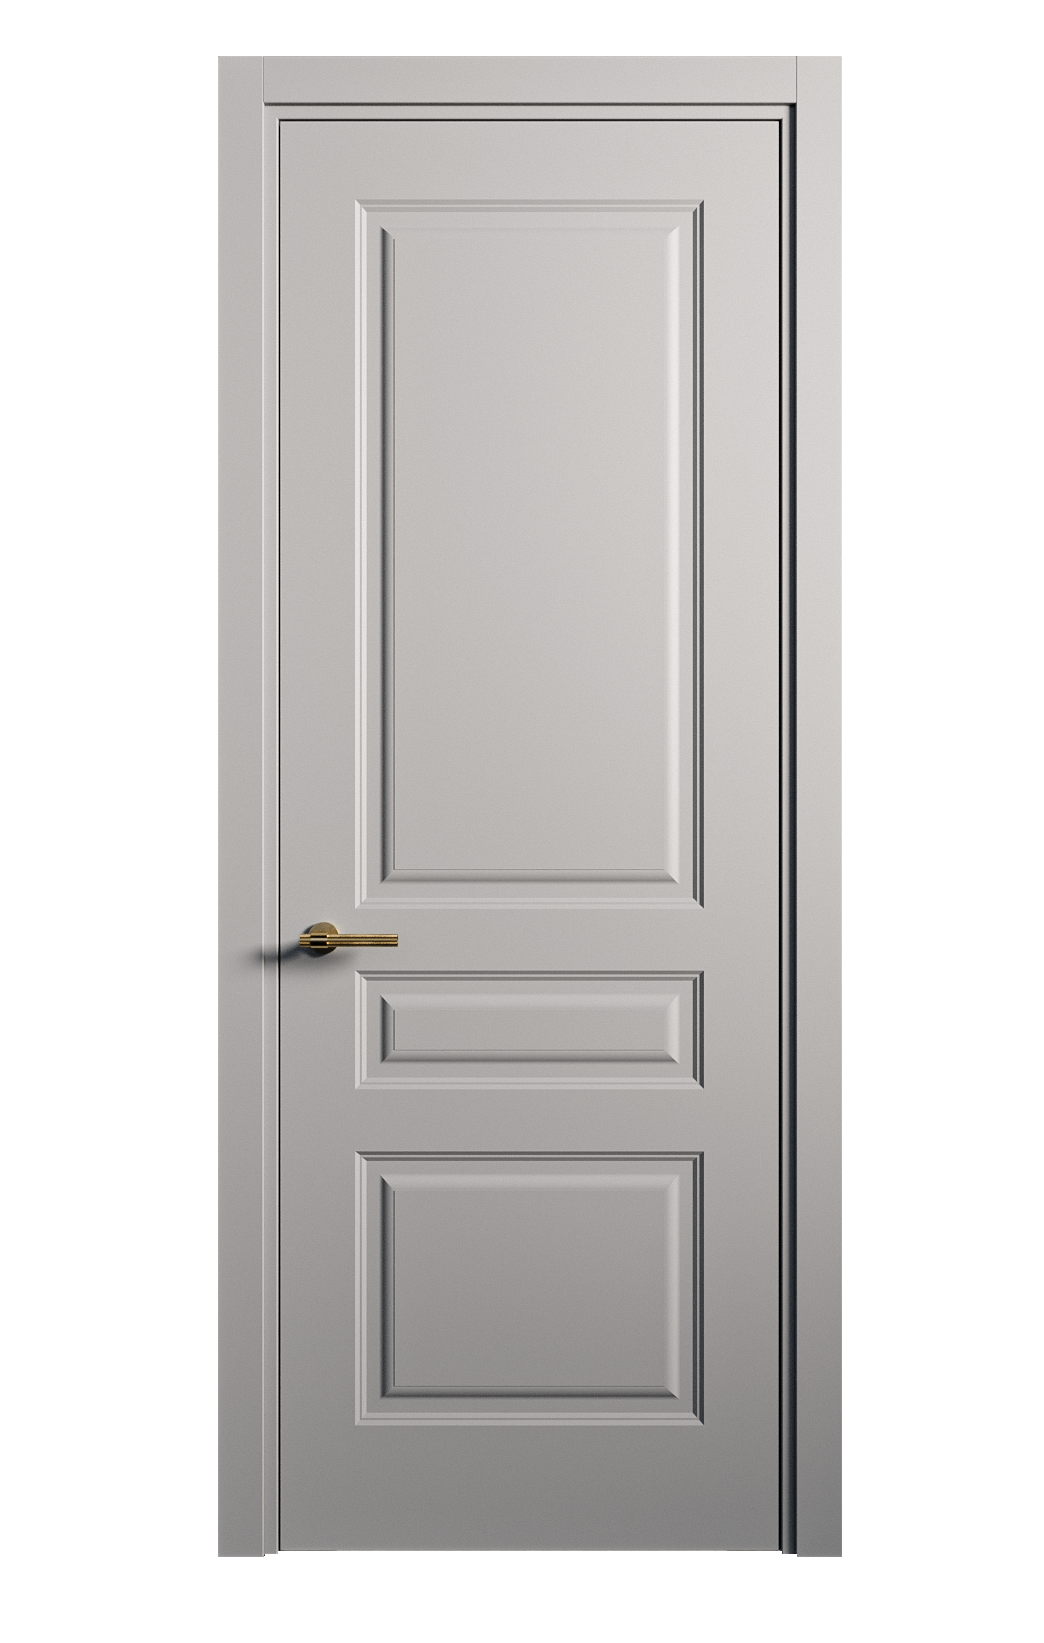 Межкомнатная дверь Вита-2 глухая эмаль ral 7040 26358